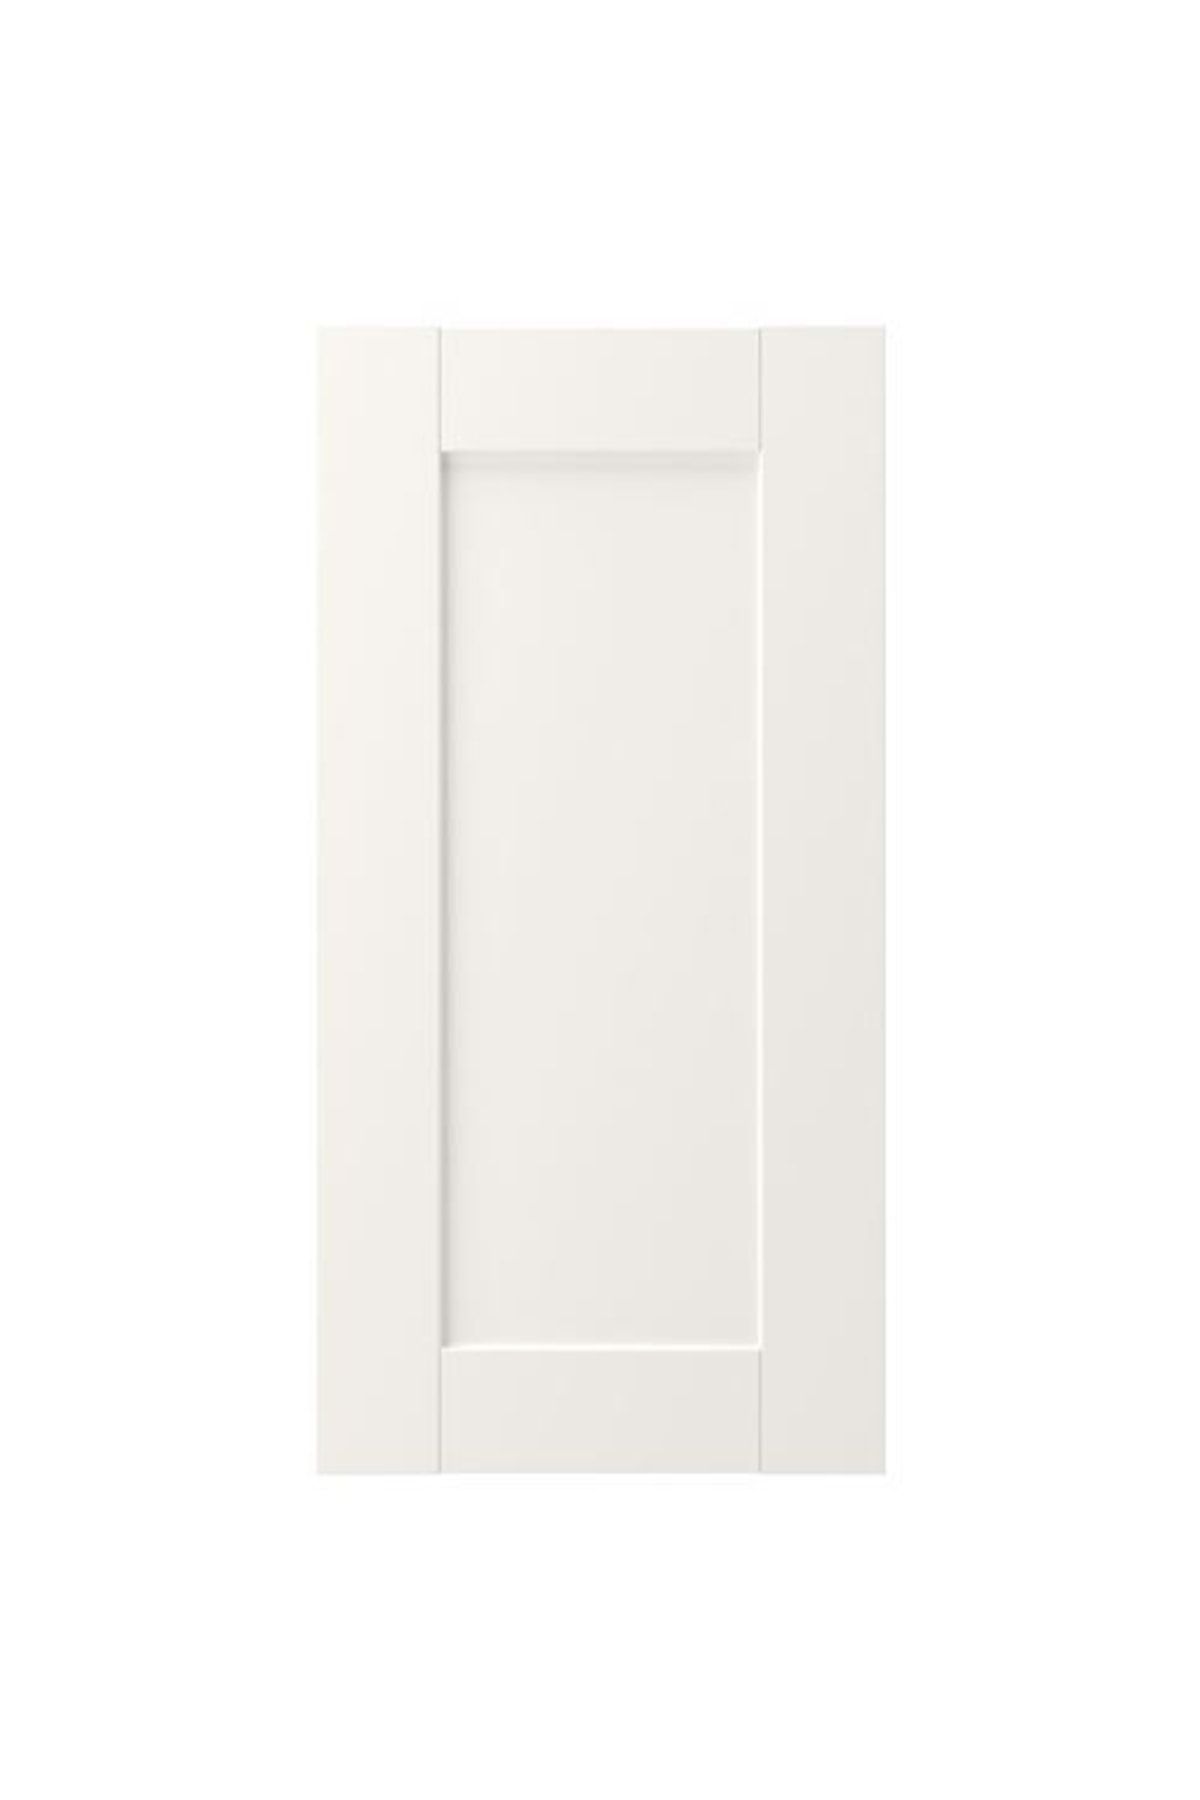 IKEA Kapak, 30x60 cm Beyaz